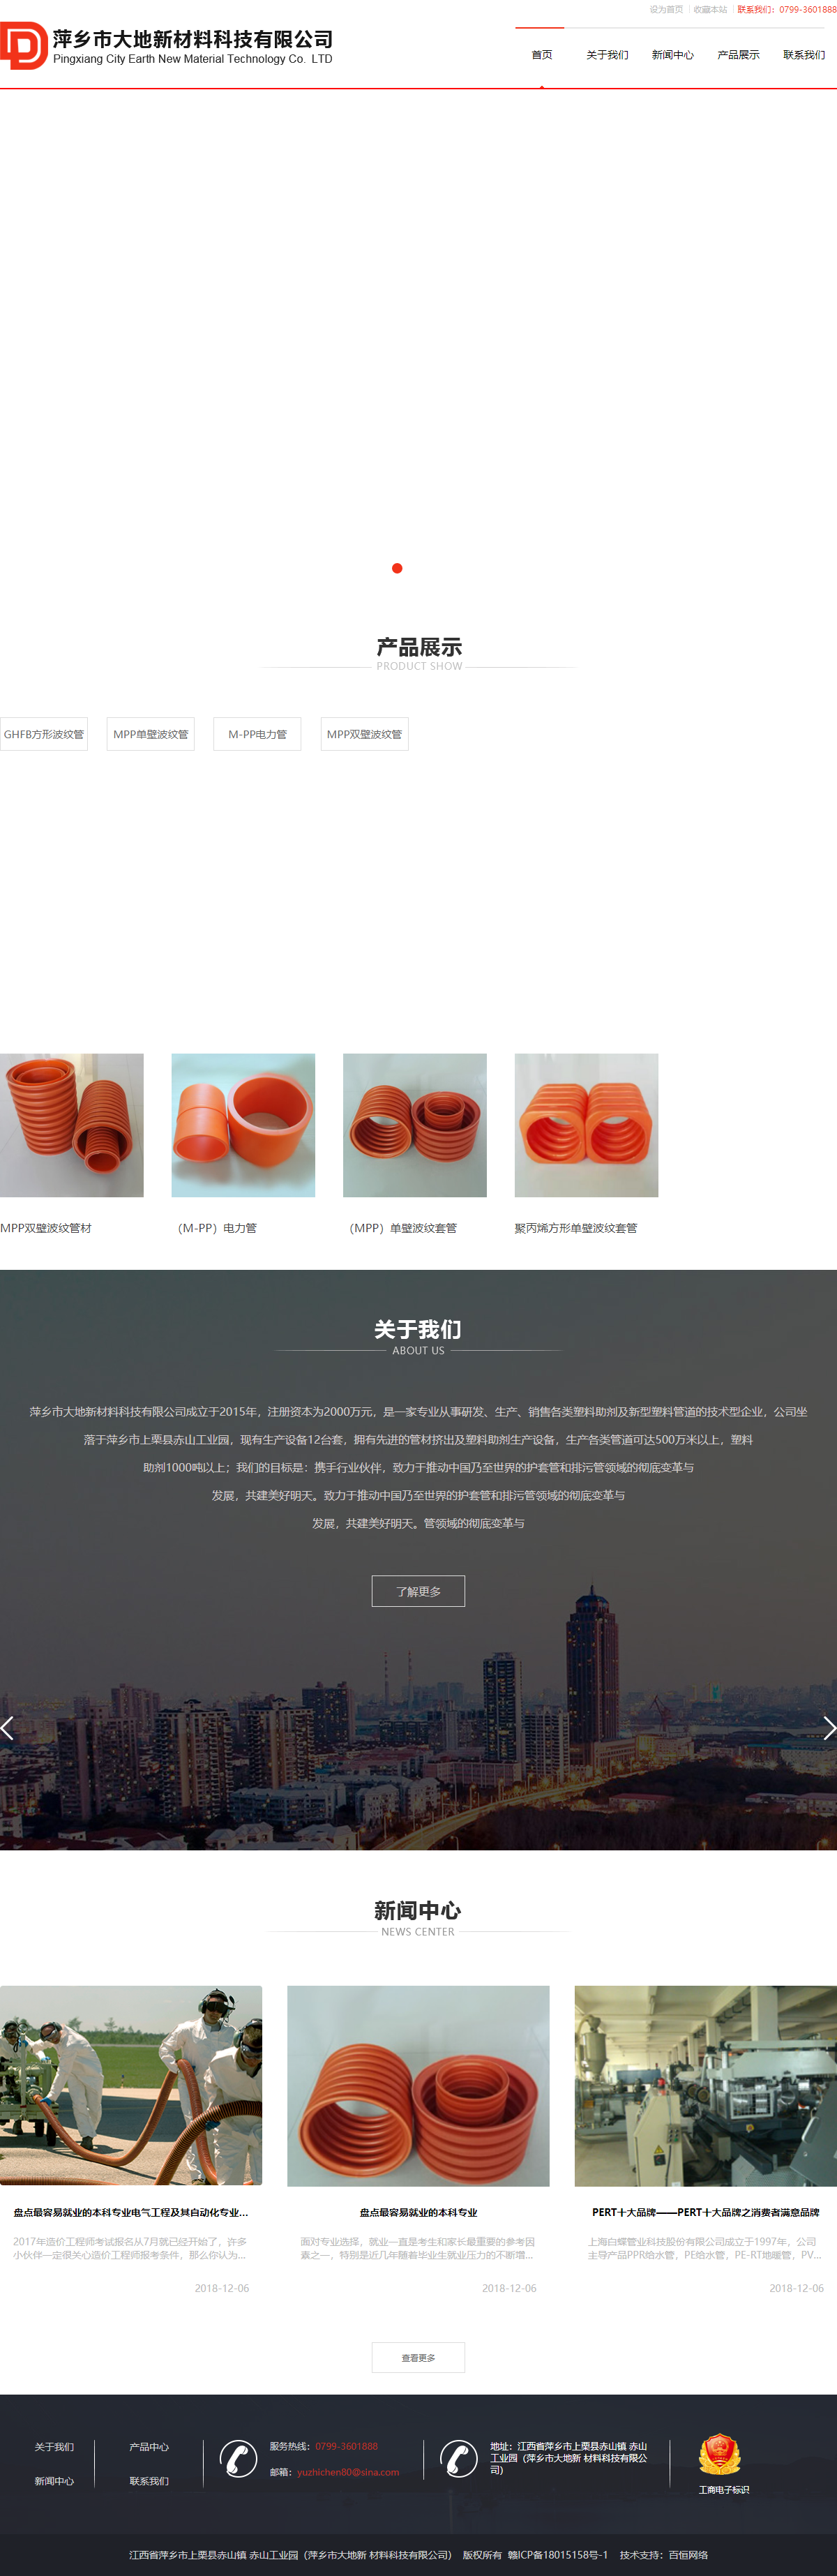 萍乡市大地新材料科技有限公司网站案例